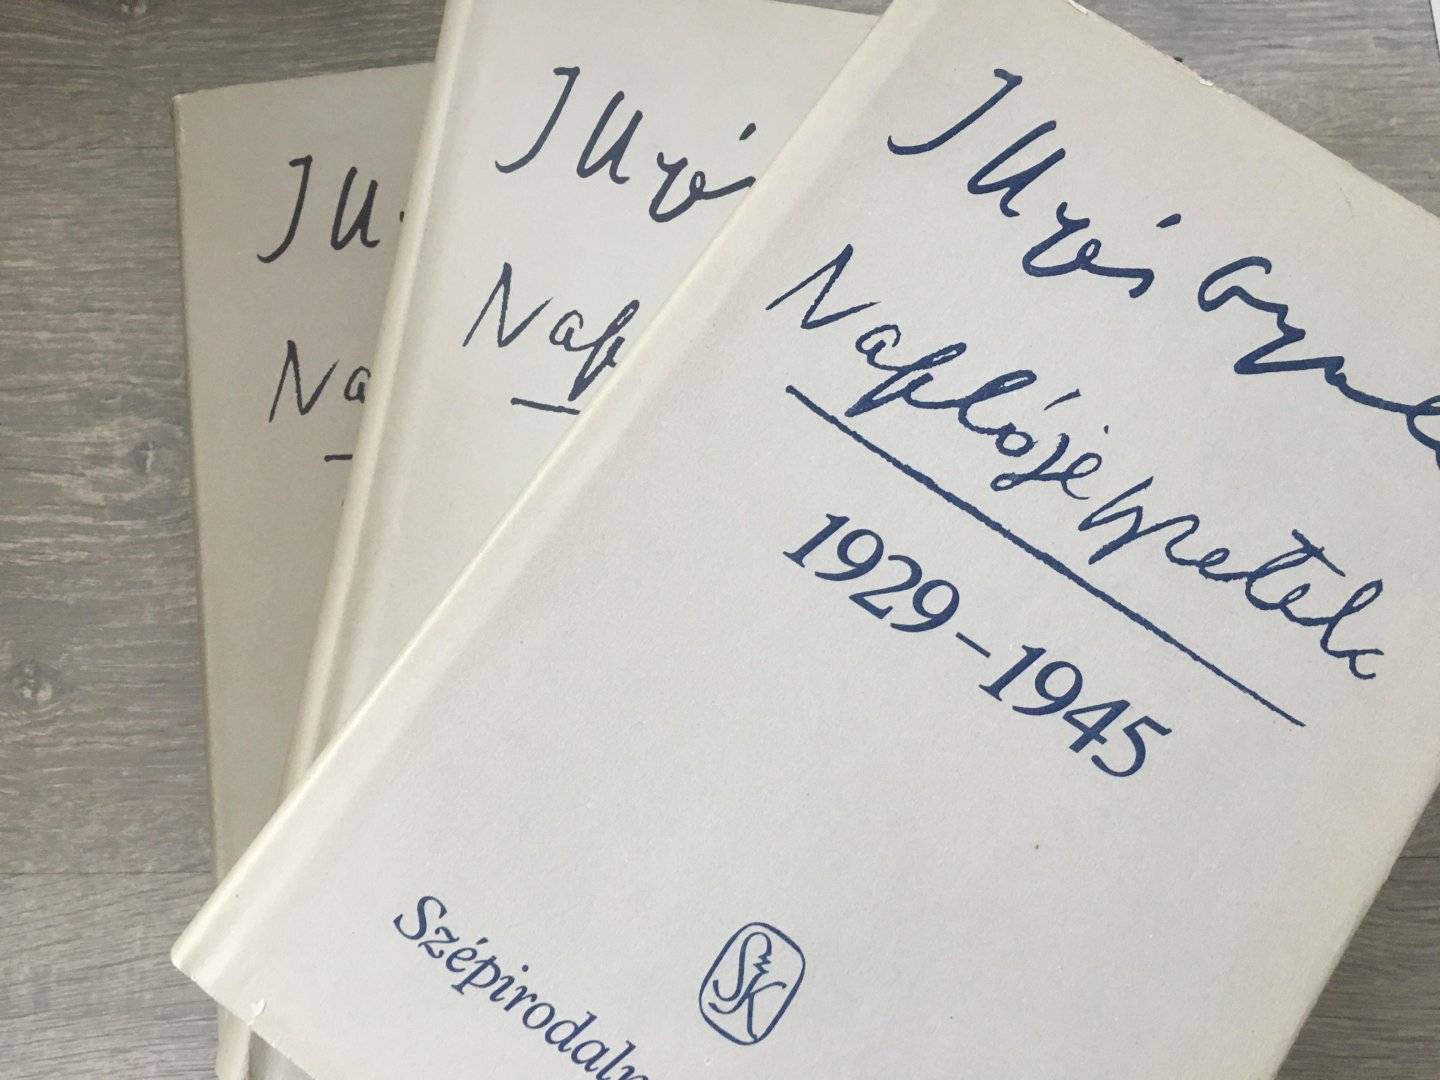 Illyés Gyuláné - Illyés Gyula Naplójegyzetek, 1929-1945, 1946-1960, 1961-1982, 3 volumes